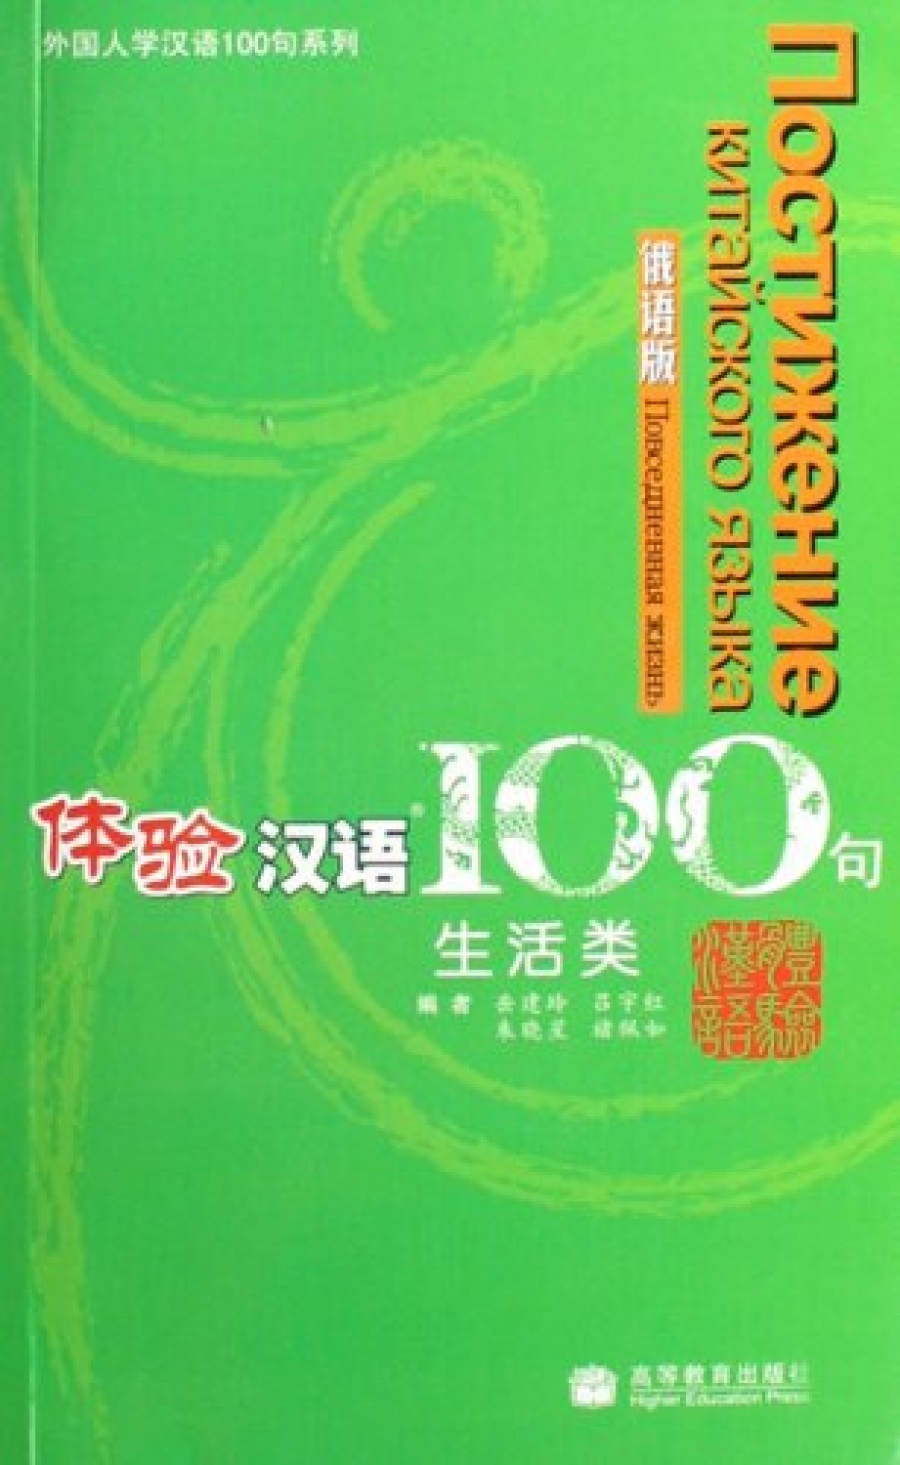 Yi Sun, Xue Sun, Feng Gu Experiencing Chinese 100: Living in China. Russian Version 